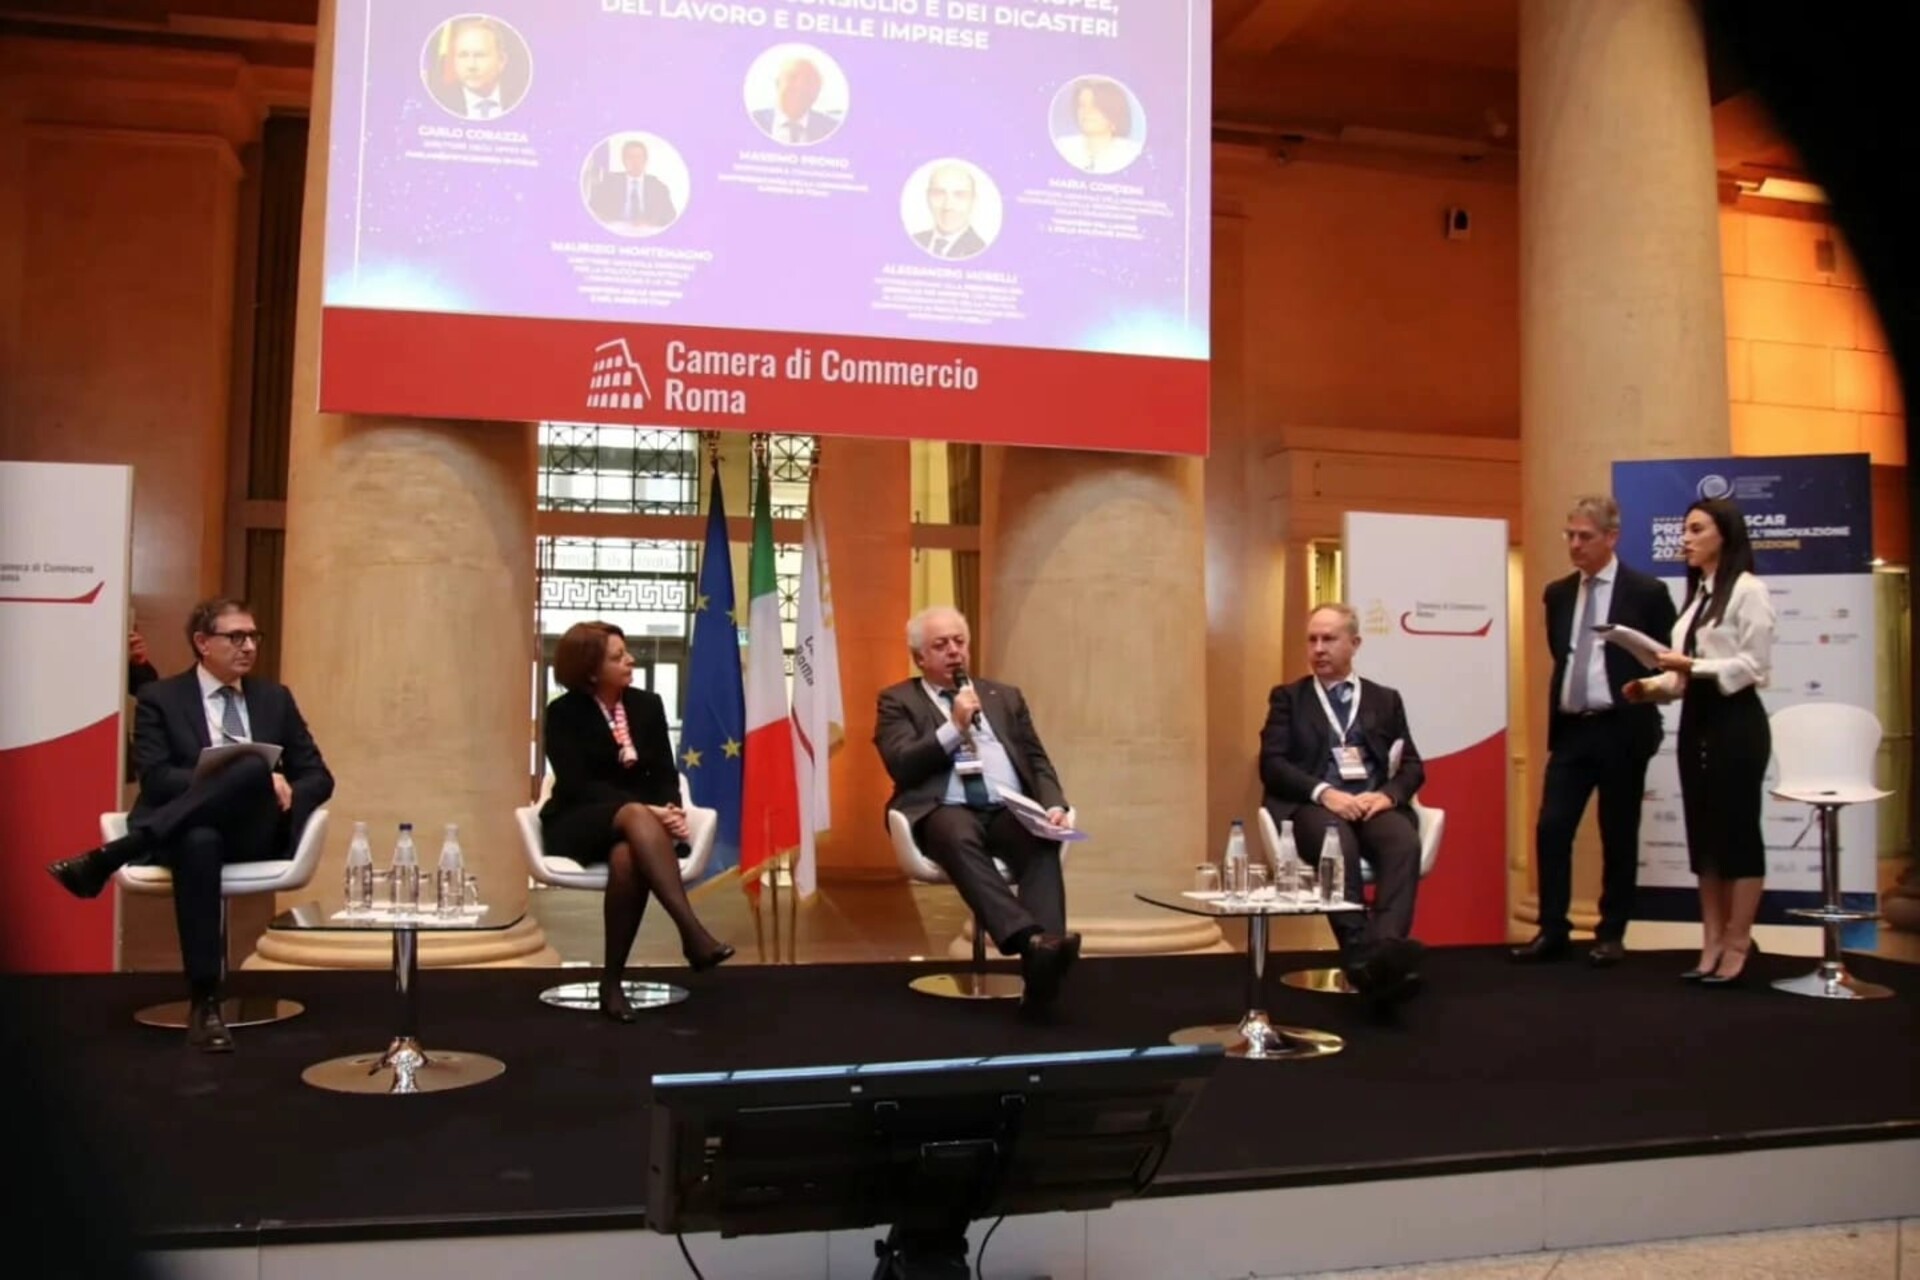 Oscar da Inovação: o "Sexto Relatório sobre a Situação da Juventude e da Inovação na Itália" preparado pelo Comitê Científico